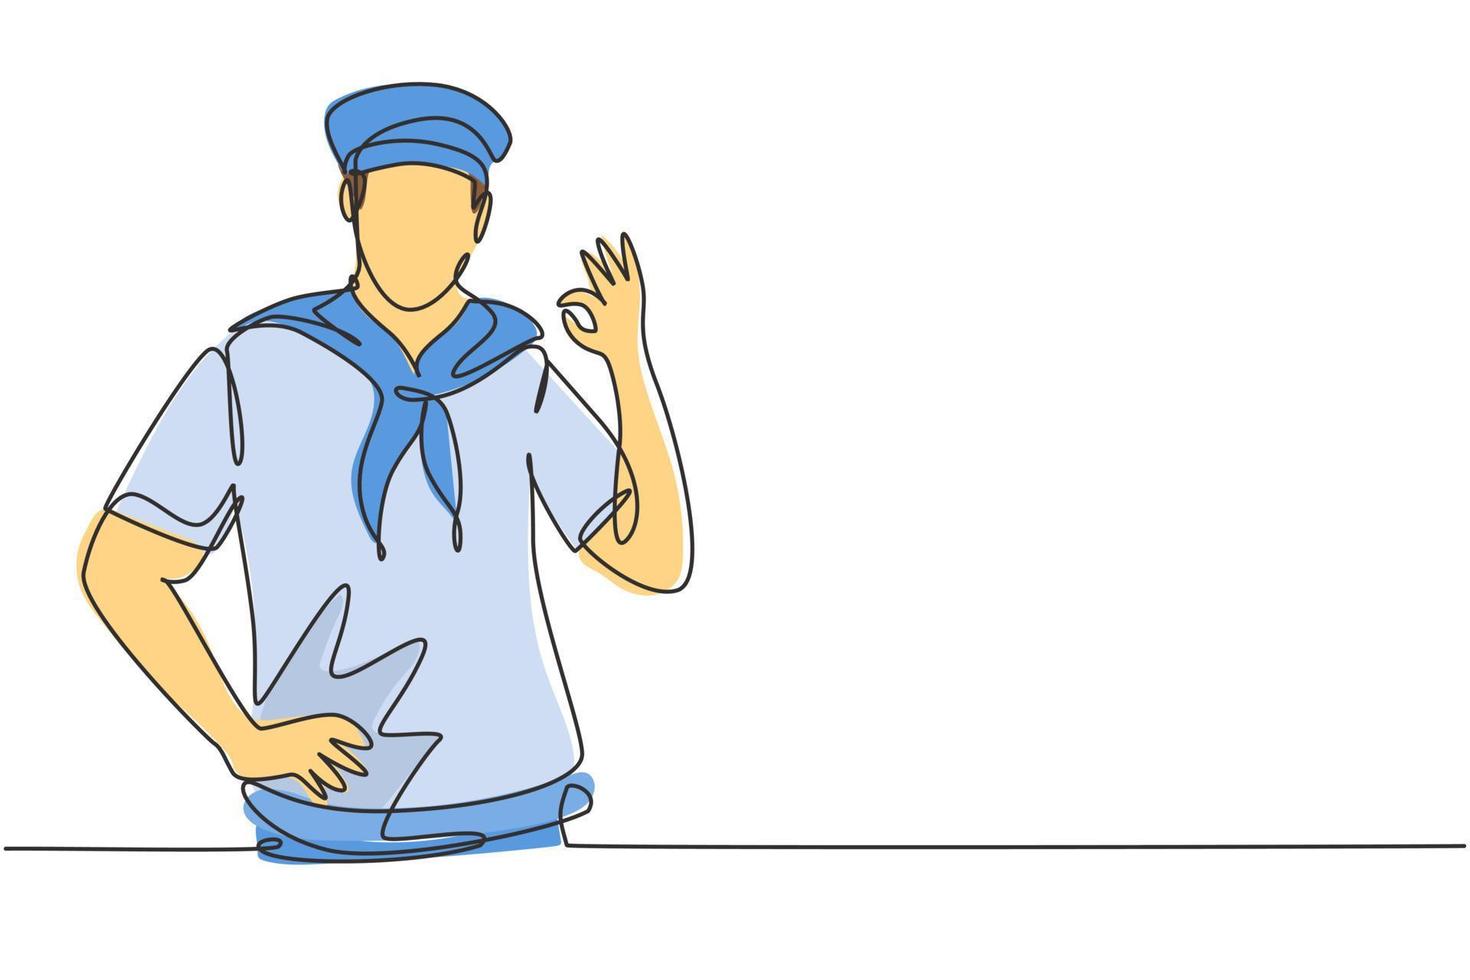 Un marinero de dibujo continuo de una línea con un gesto bien y un pañuelo alrededor del cuello listo para navegar a través de los mares en un barco encabezado por el capitán. trabajo exitoso. Ilustración gráfica de vector de diseño de dibujo de una sola línea